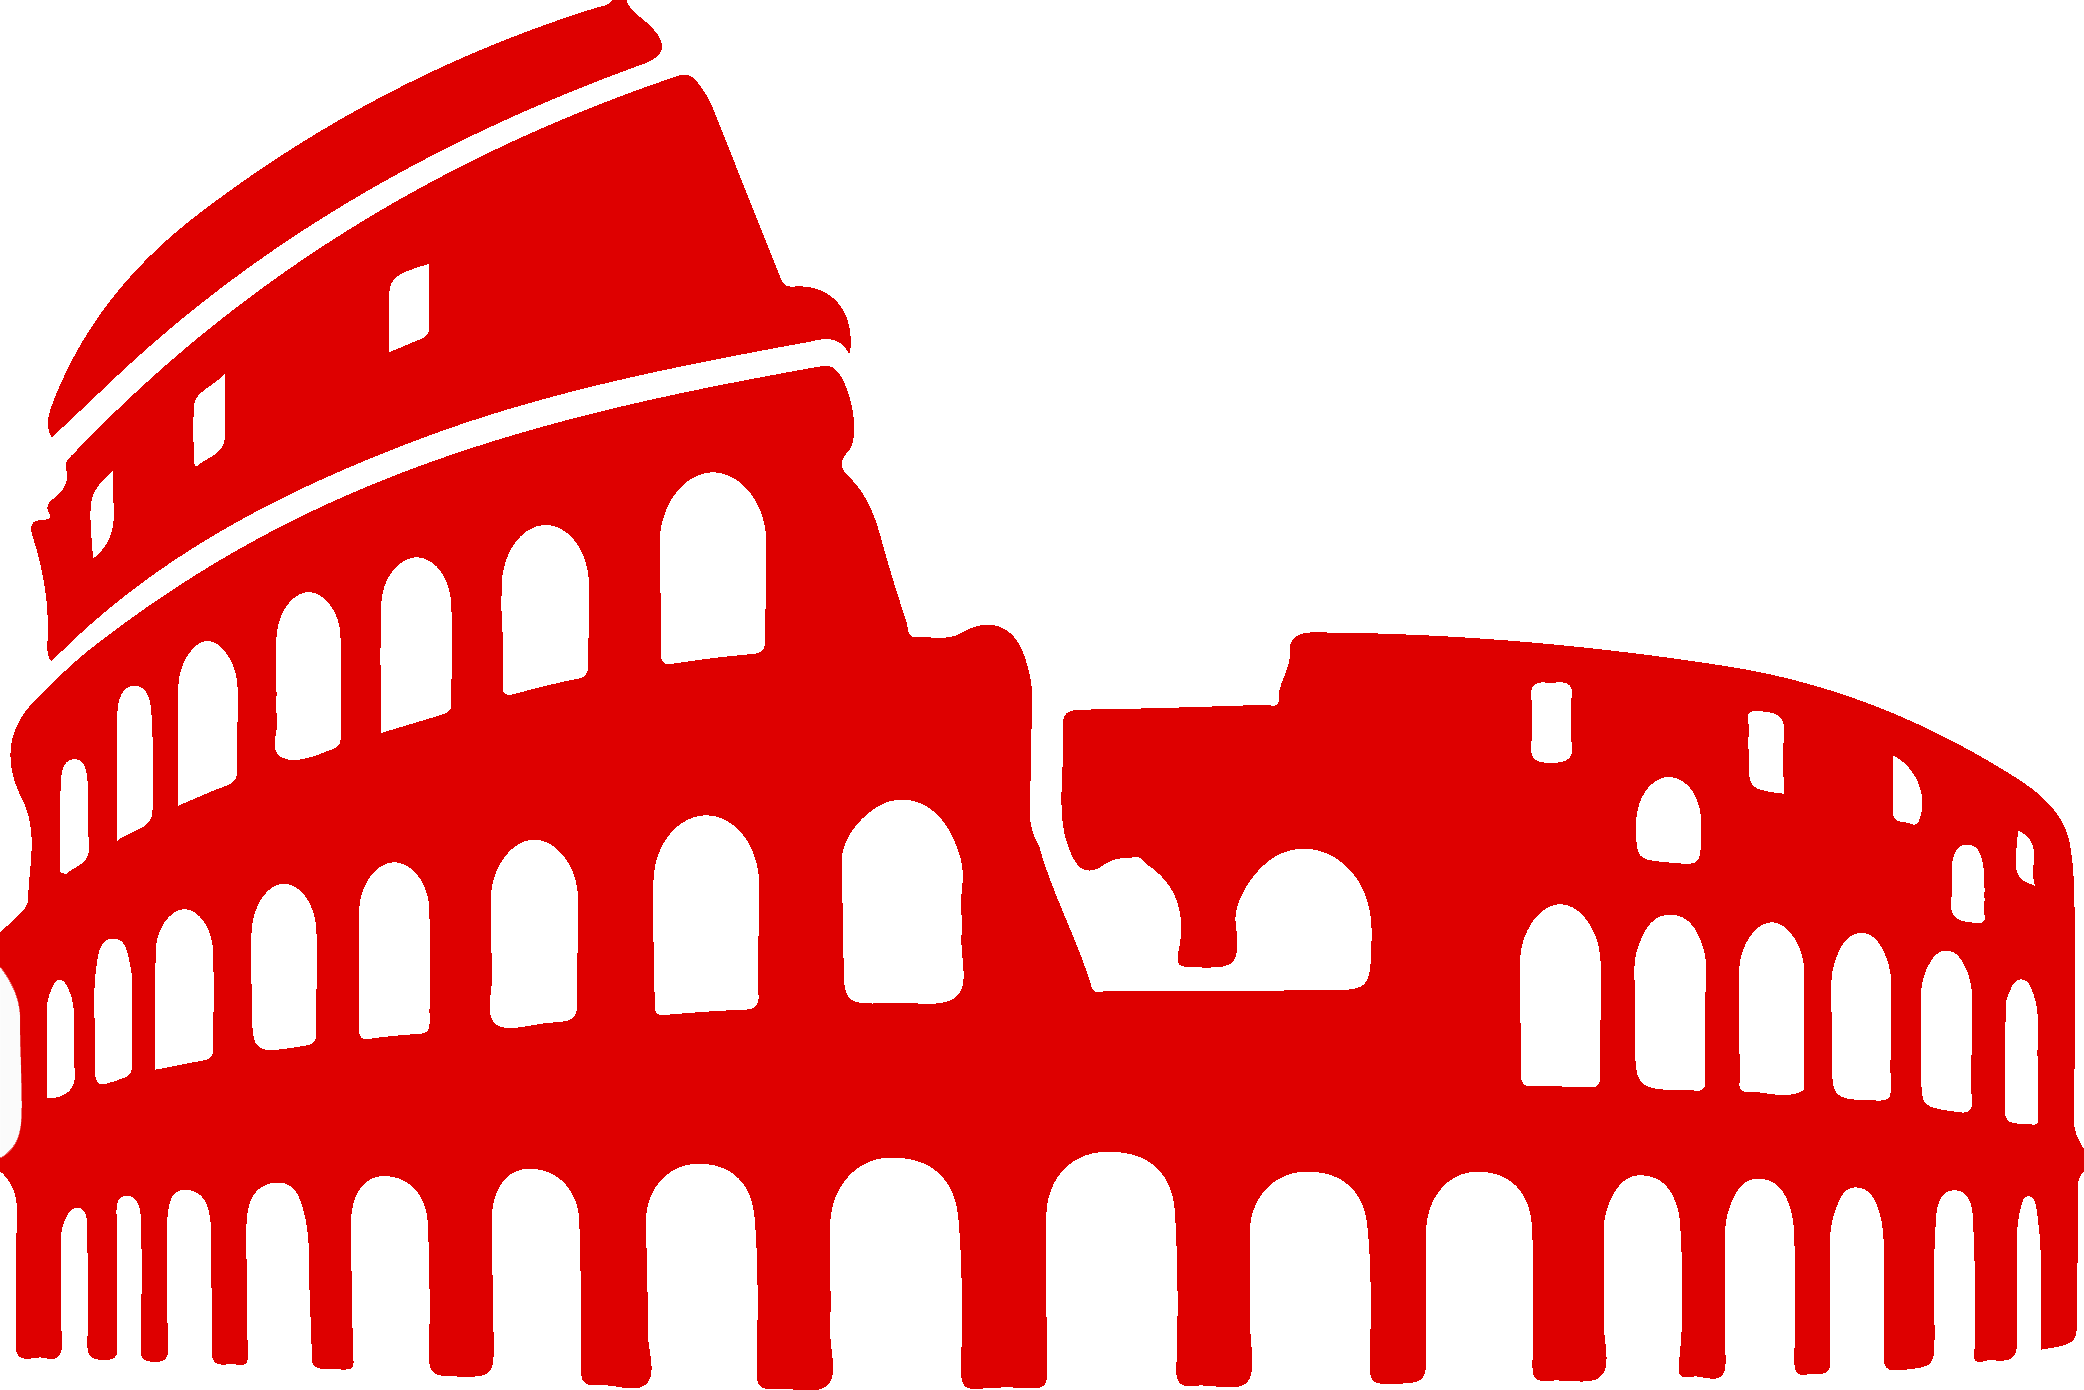 Rome Colosseum Silhouette (2084x1390)